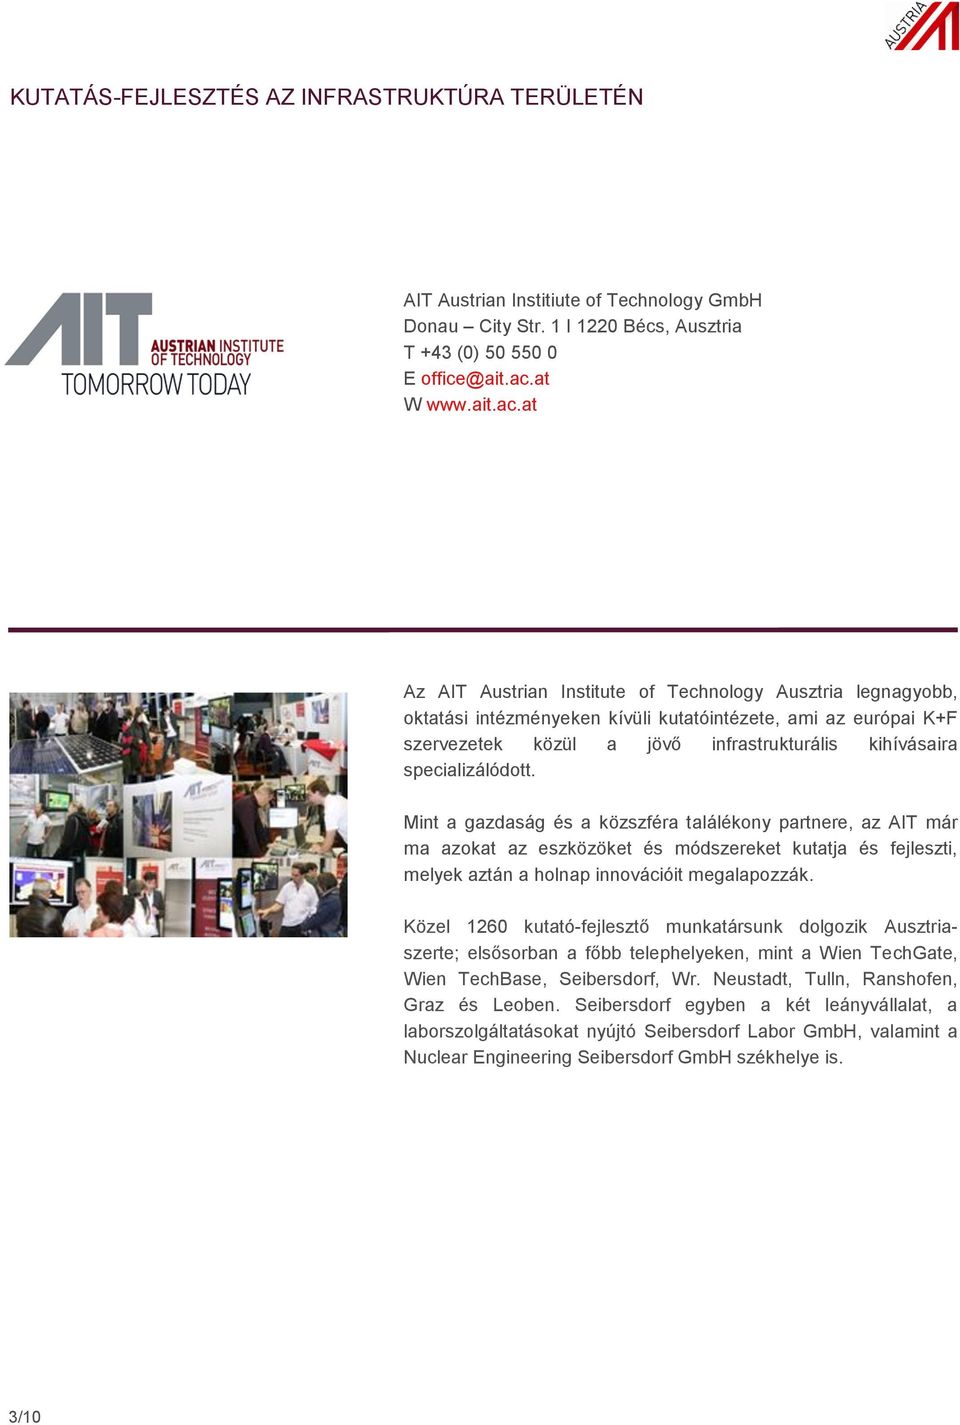 at Az AIT Austrian Institute of Technology Ausztria legnagyobb, oktatási intézményeken kívüli kutatóintézete, ami az európai K+F szervezetek közül a jövő infrastrukturális kihívásaira